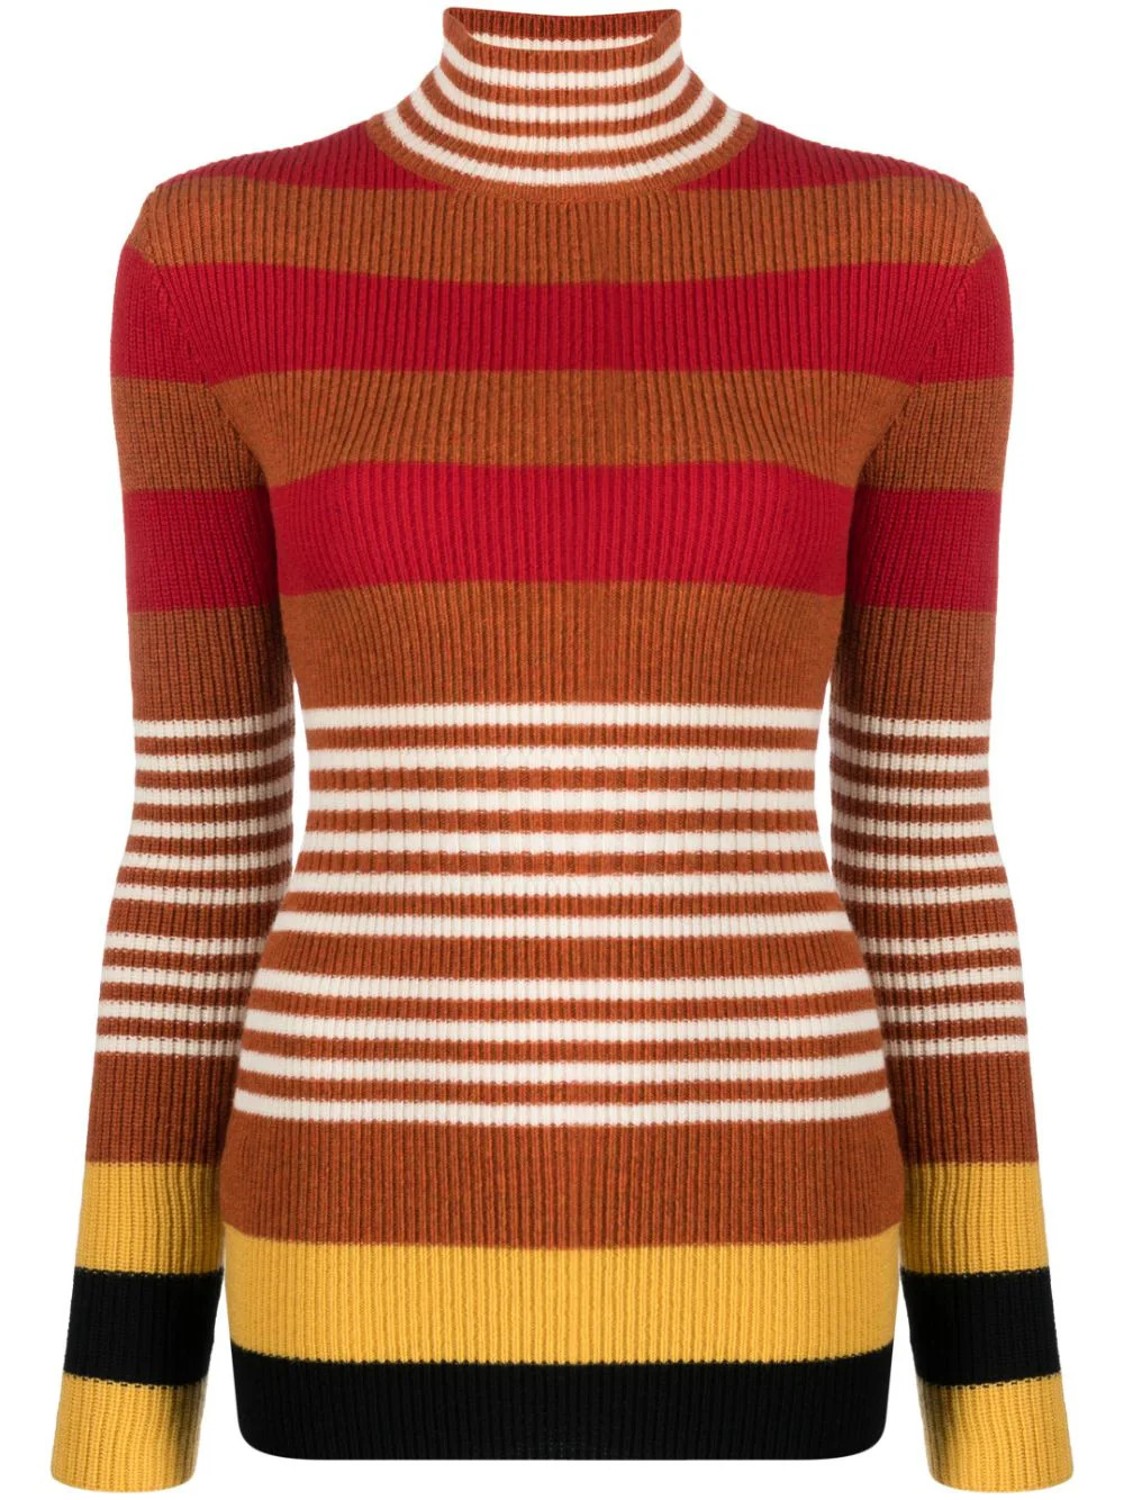 shop Marni  Maglie: Maglie Marni, in lana shetland, collo alto, manica lunga, fit aderente, righe multicolore.

Composizione: 100% lana. number 2624